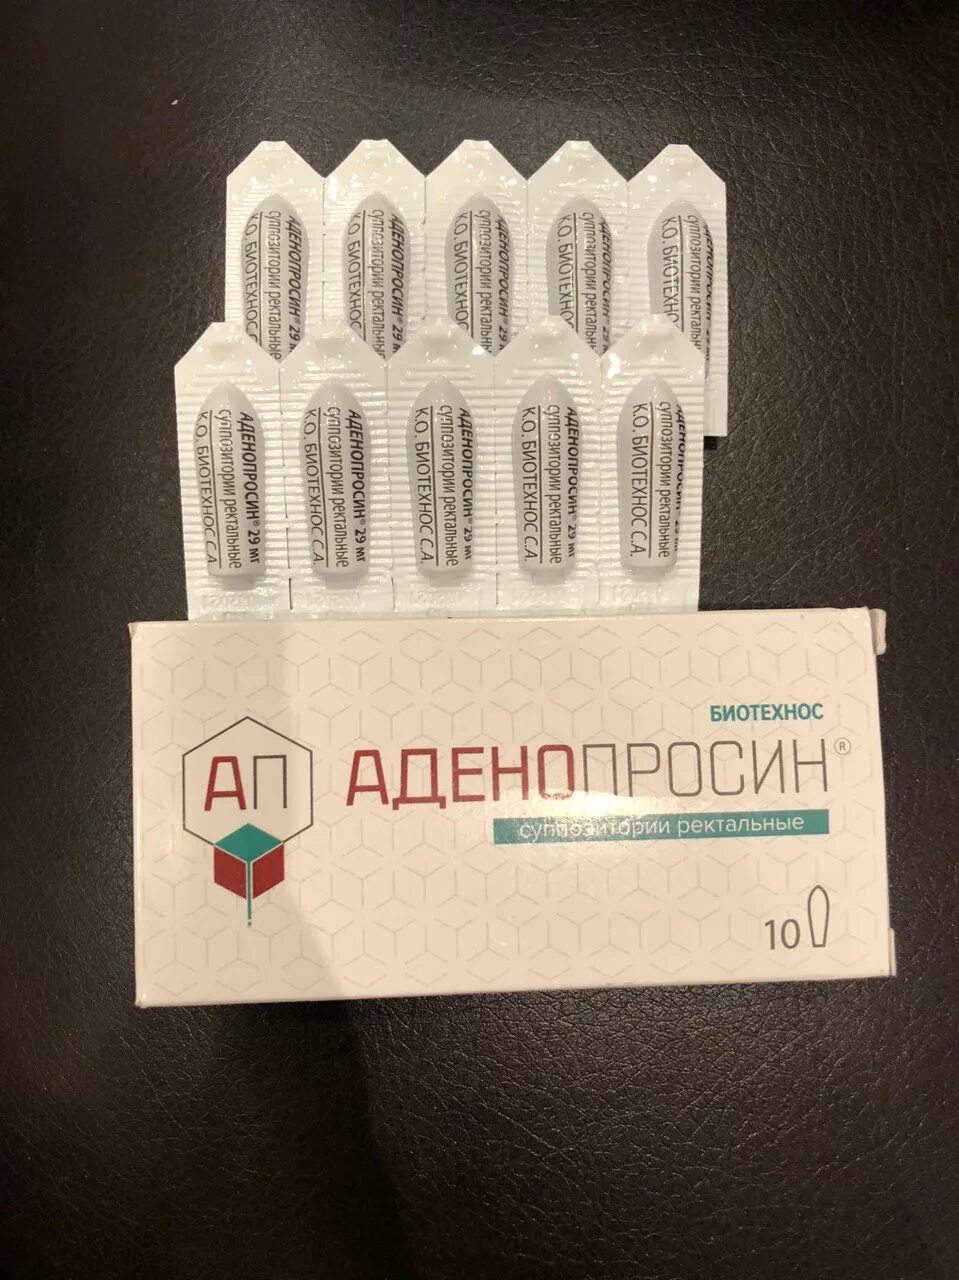 Аденопросин. Аденопросин 150 мг. Свечи аденопросин 150мг. Аденопросин супп 150мг №10. Аденопросин 150 мг 10 супп.рект.